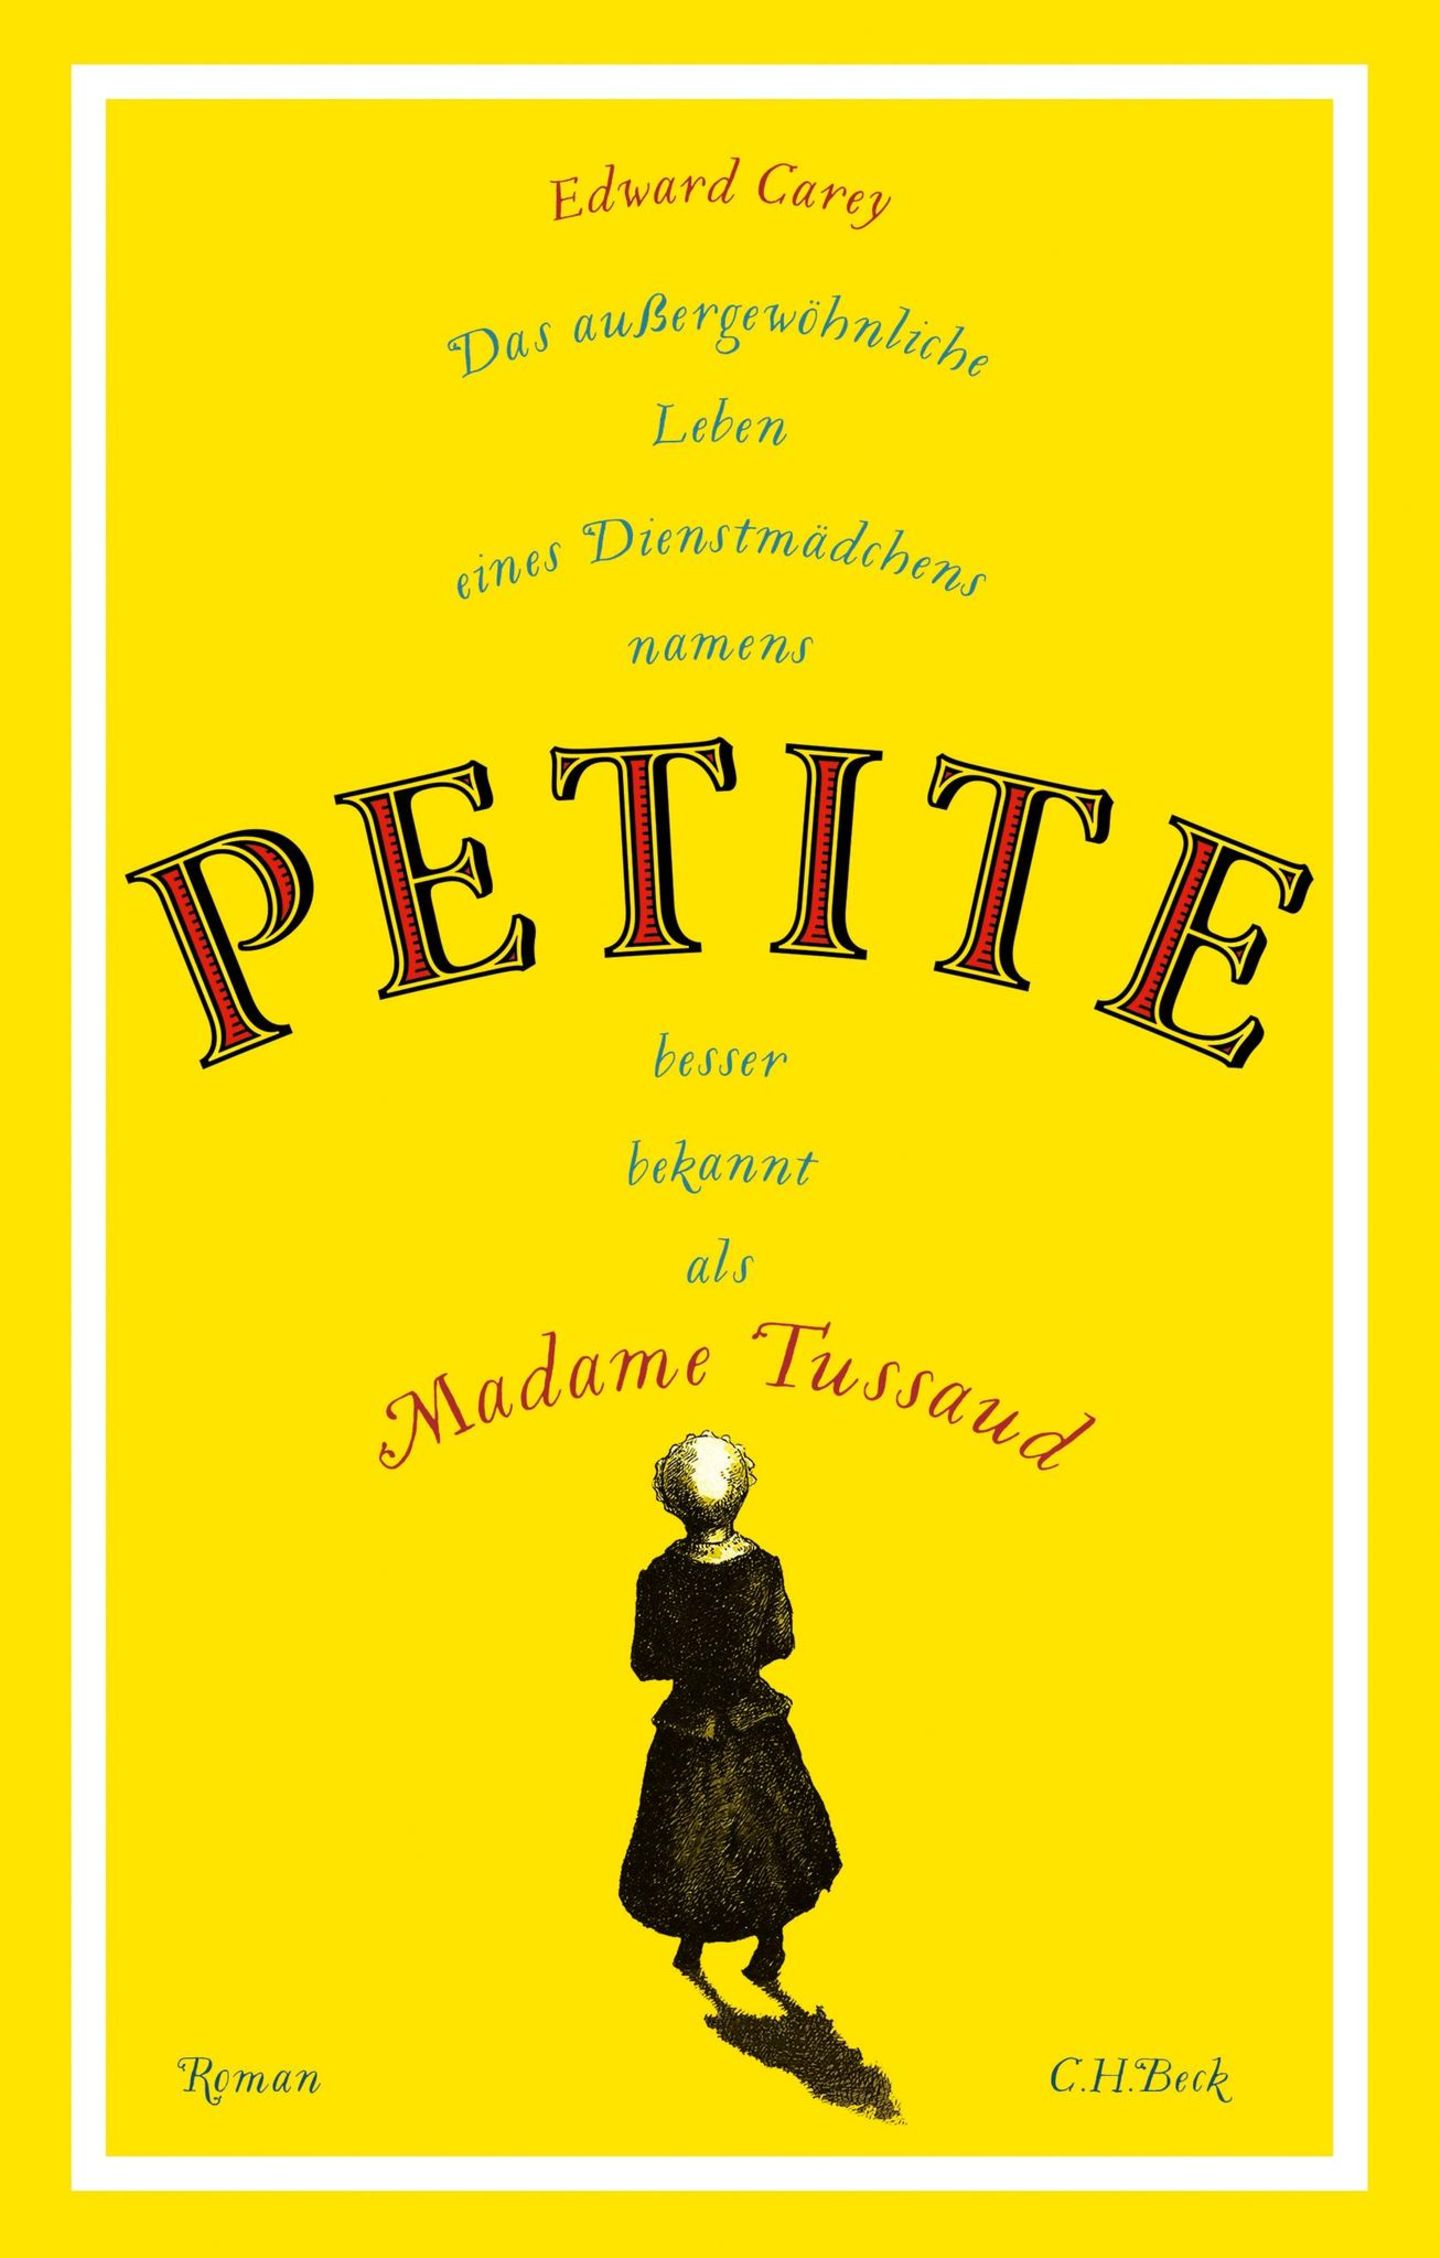 Bücher fürs Leben: "Das außergewöhnliche Leben eines Dienstmädchens namens PETITE, besser bekannt als Madame Tussaud"